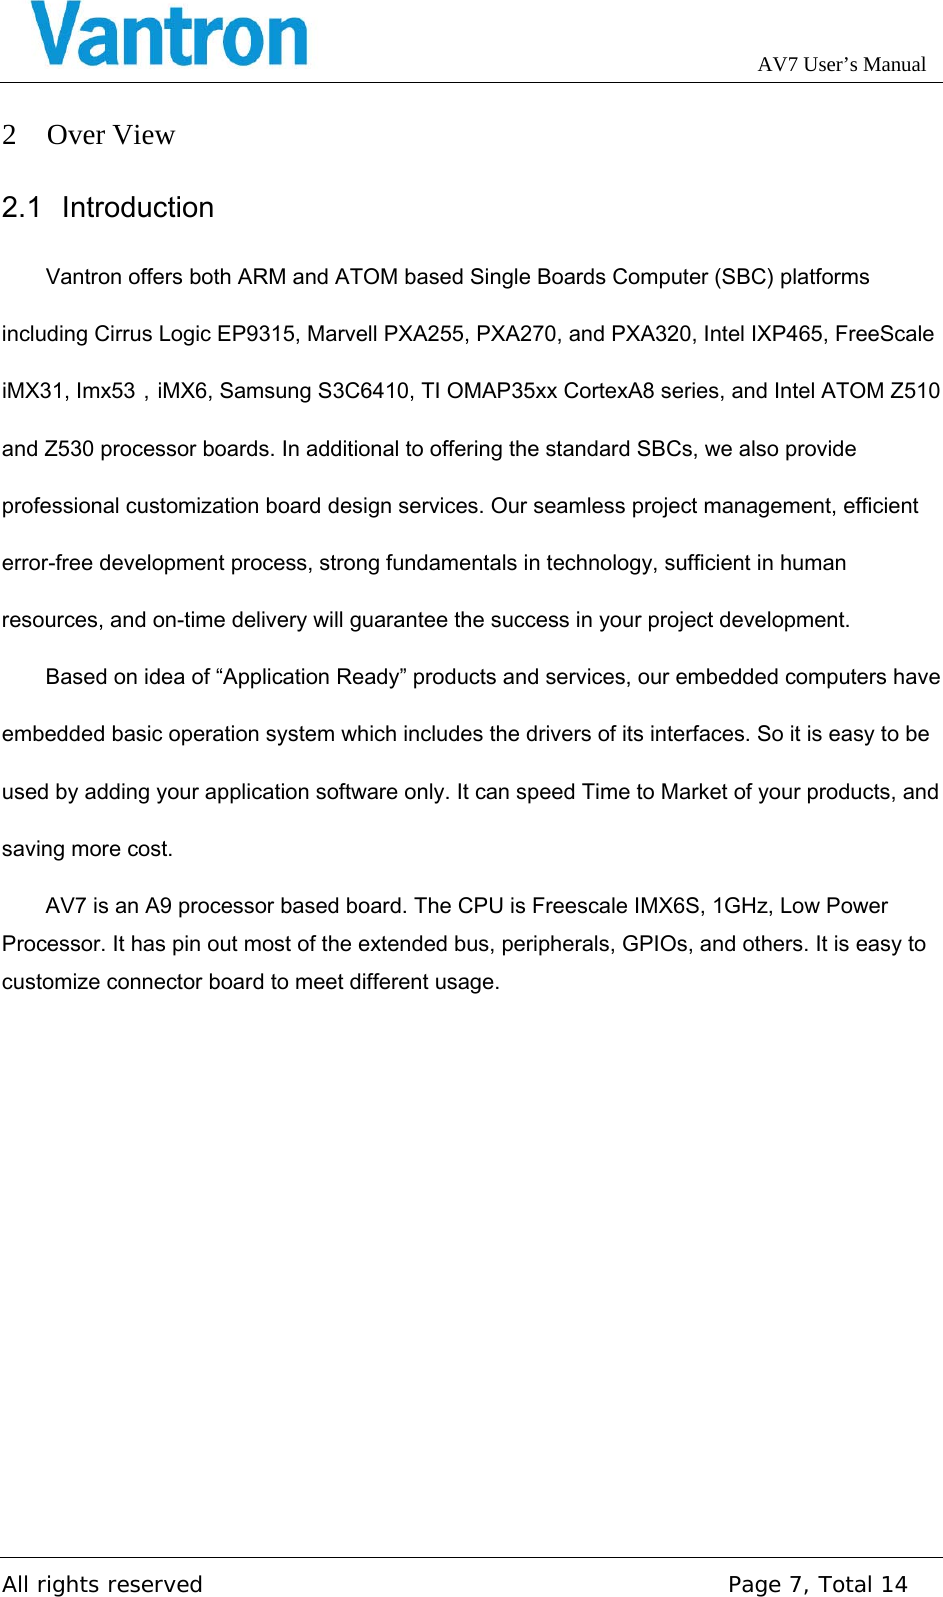 Page 7 of Chengdu Vantron Technology AV5AV72 M2M Gateway application User Manual AV7